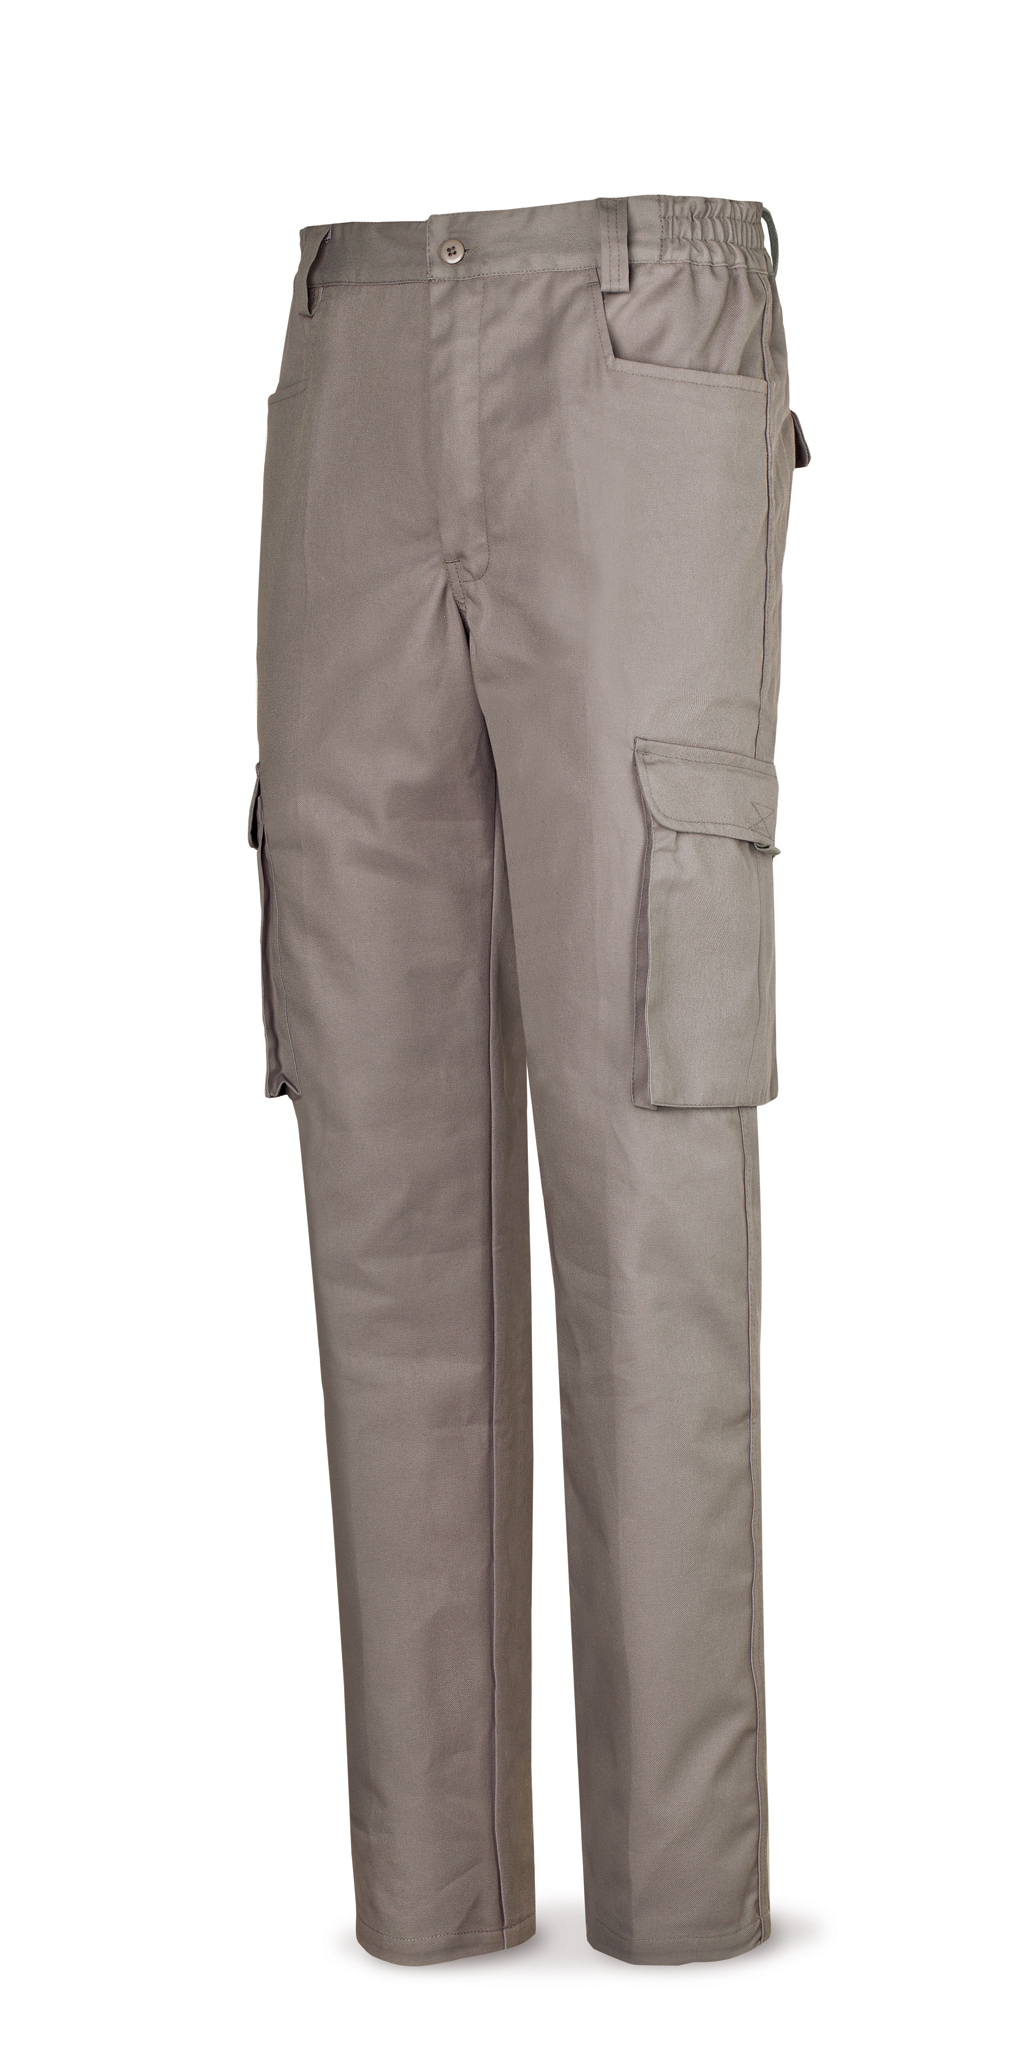 488-PG Top Vestuario Laboral Serie Top Pantalón gris poliester/algodón de 245 g. Multibolsillo